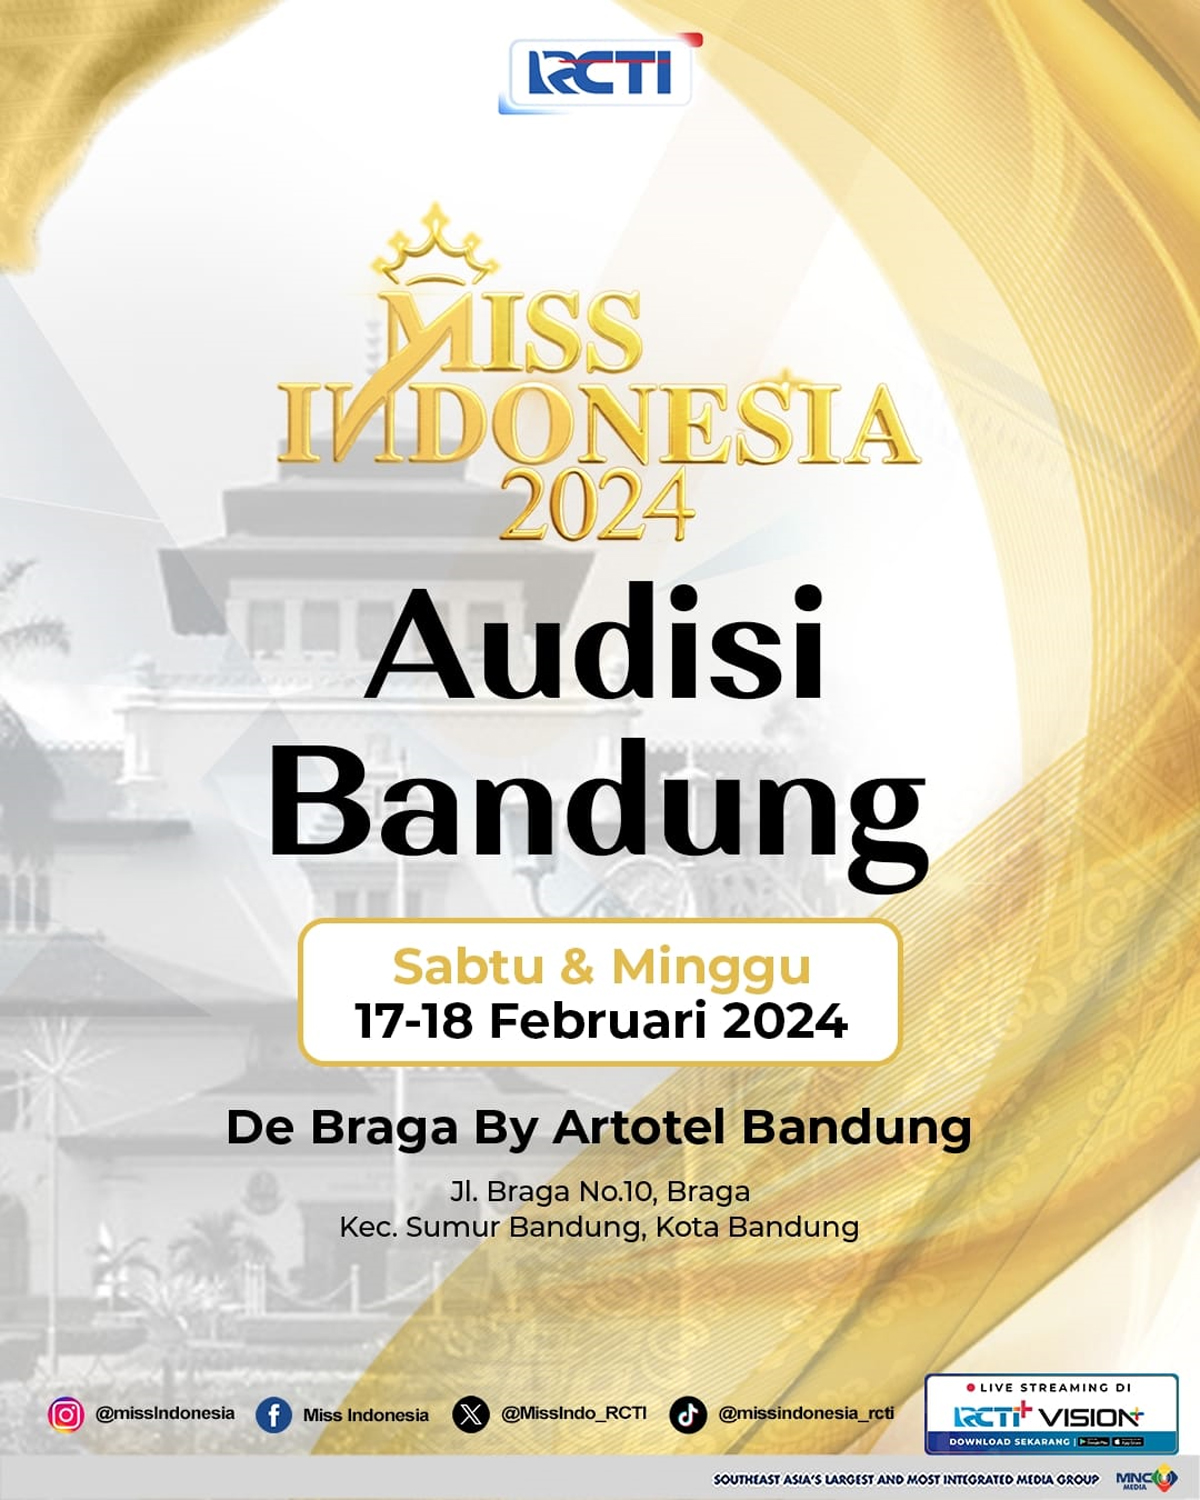 Bandung Jadi Kota Pembuka Audisi Miss Indonesia 2024, Cek Jadwal di 4 Kota Besar di Pulau Jawa